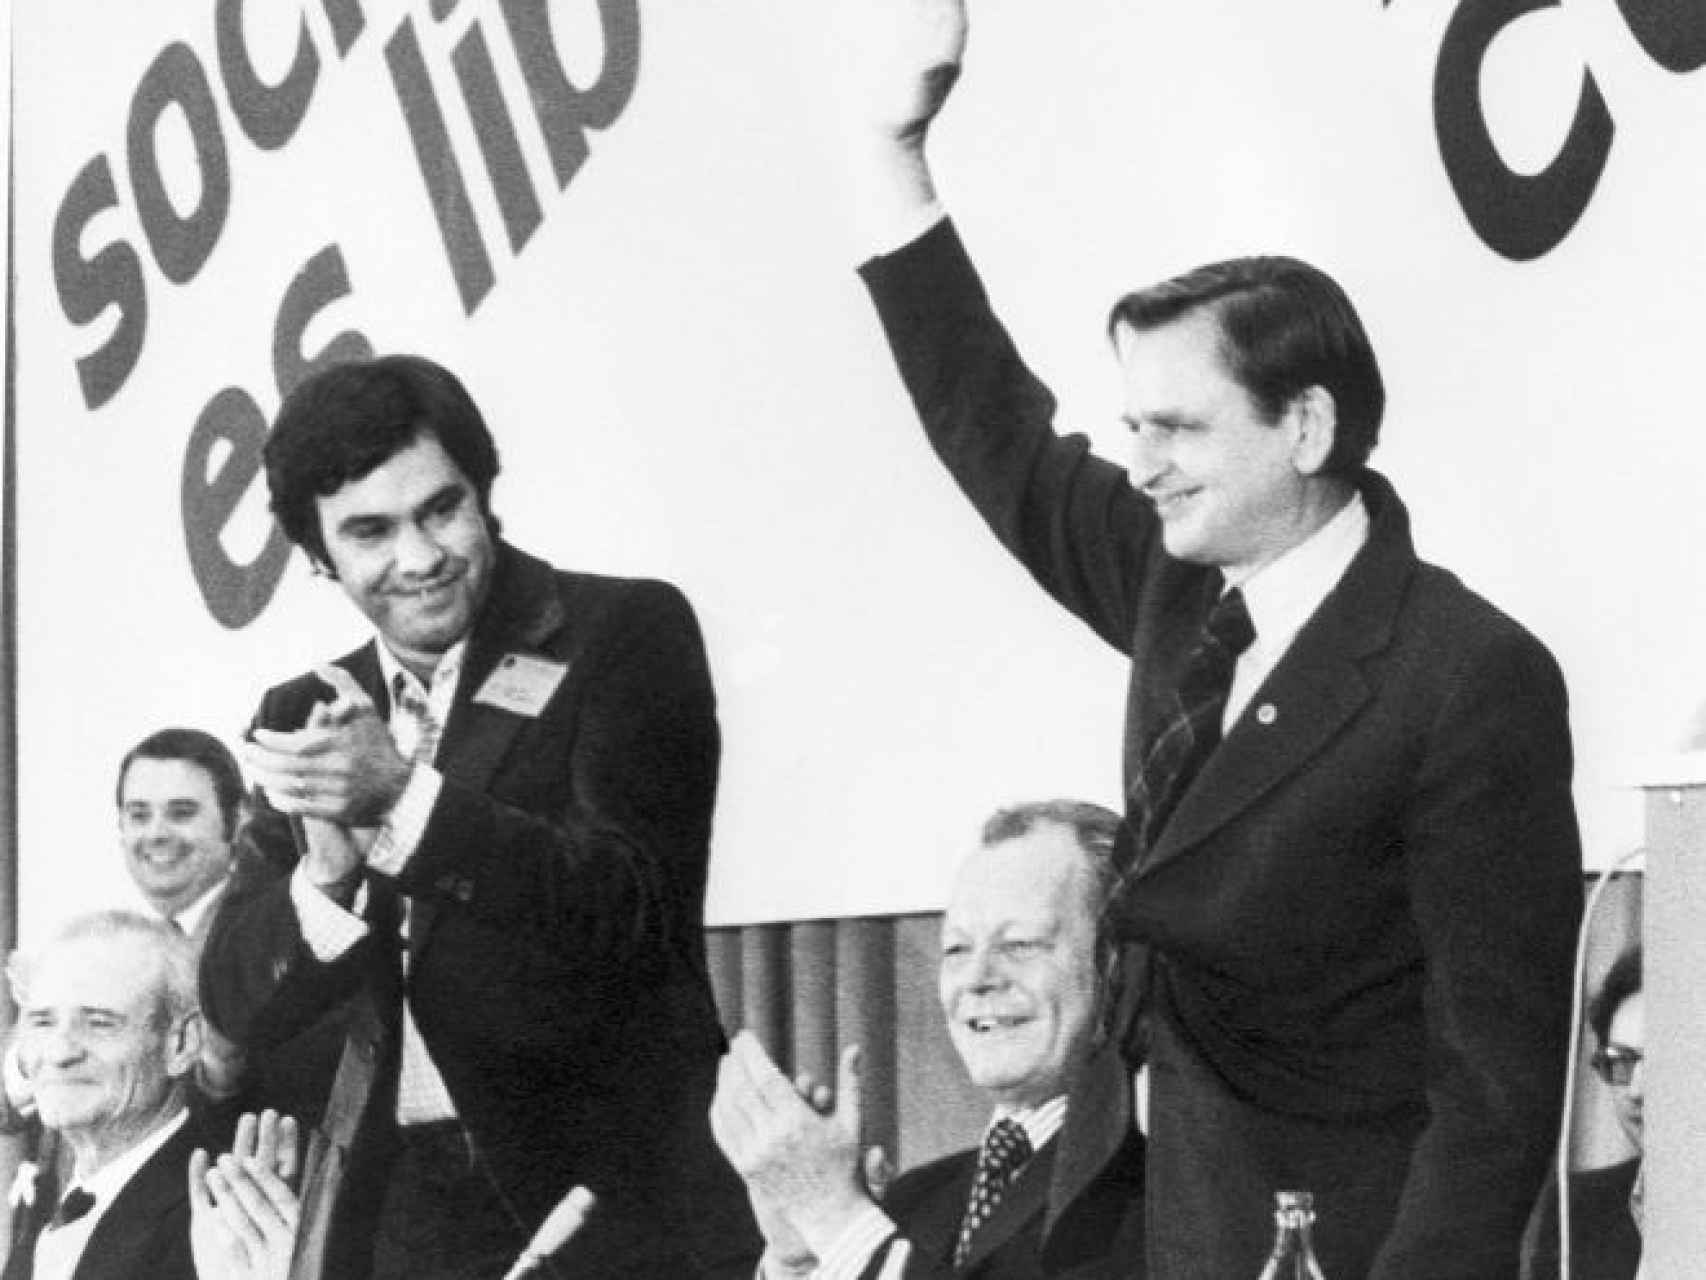 González recibió el apoyo en 1976 del primer ministro sueco, Olof Palme, (saludando) y del ex canciller alemán Willy Brandt